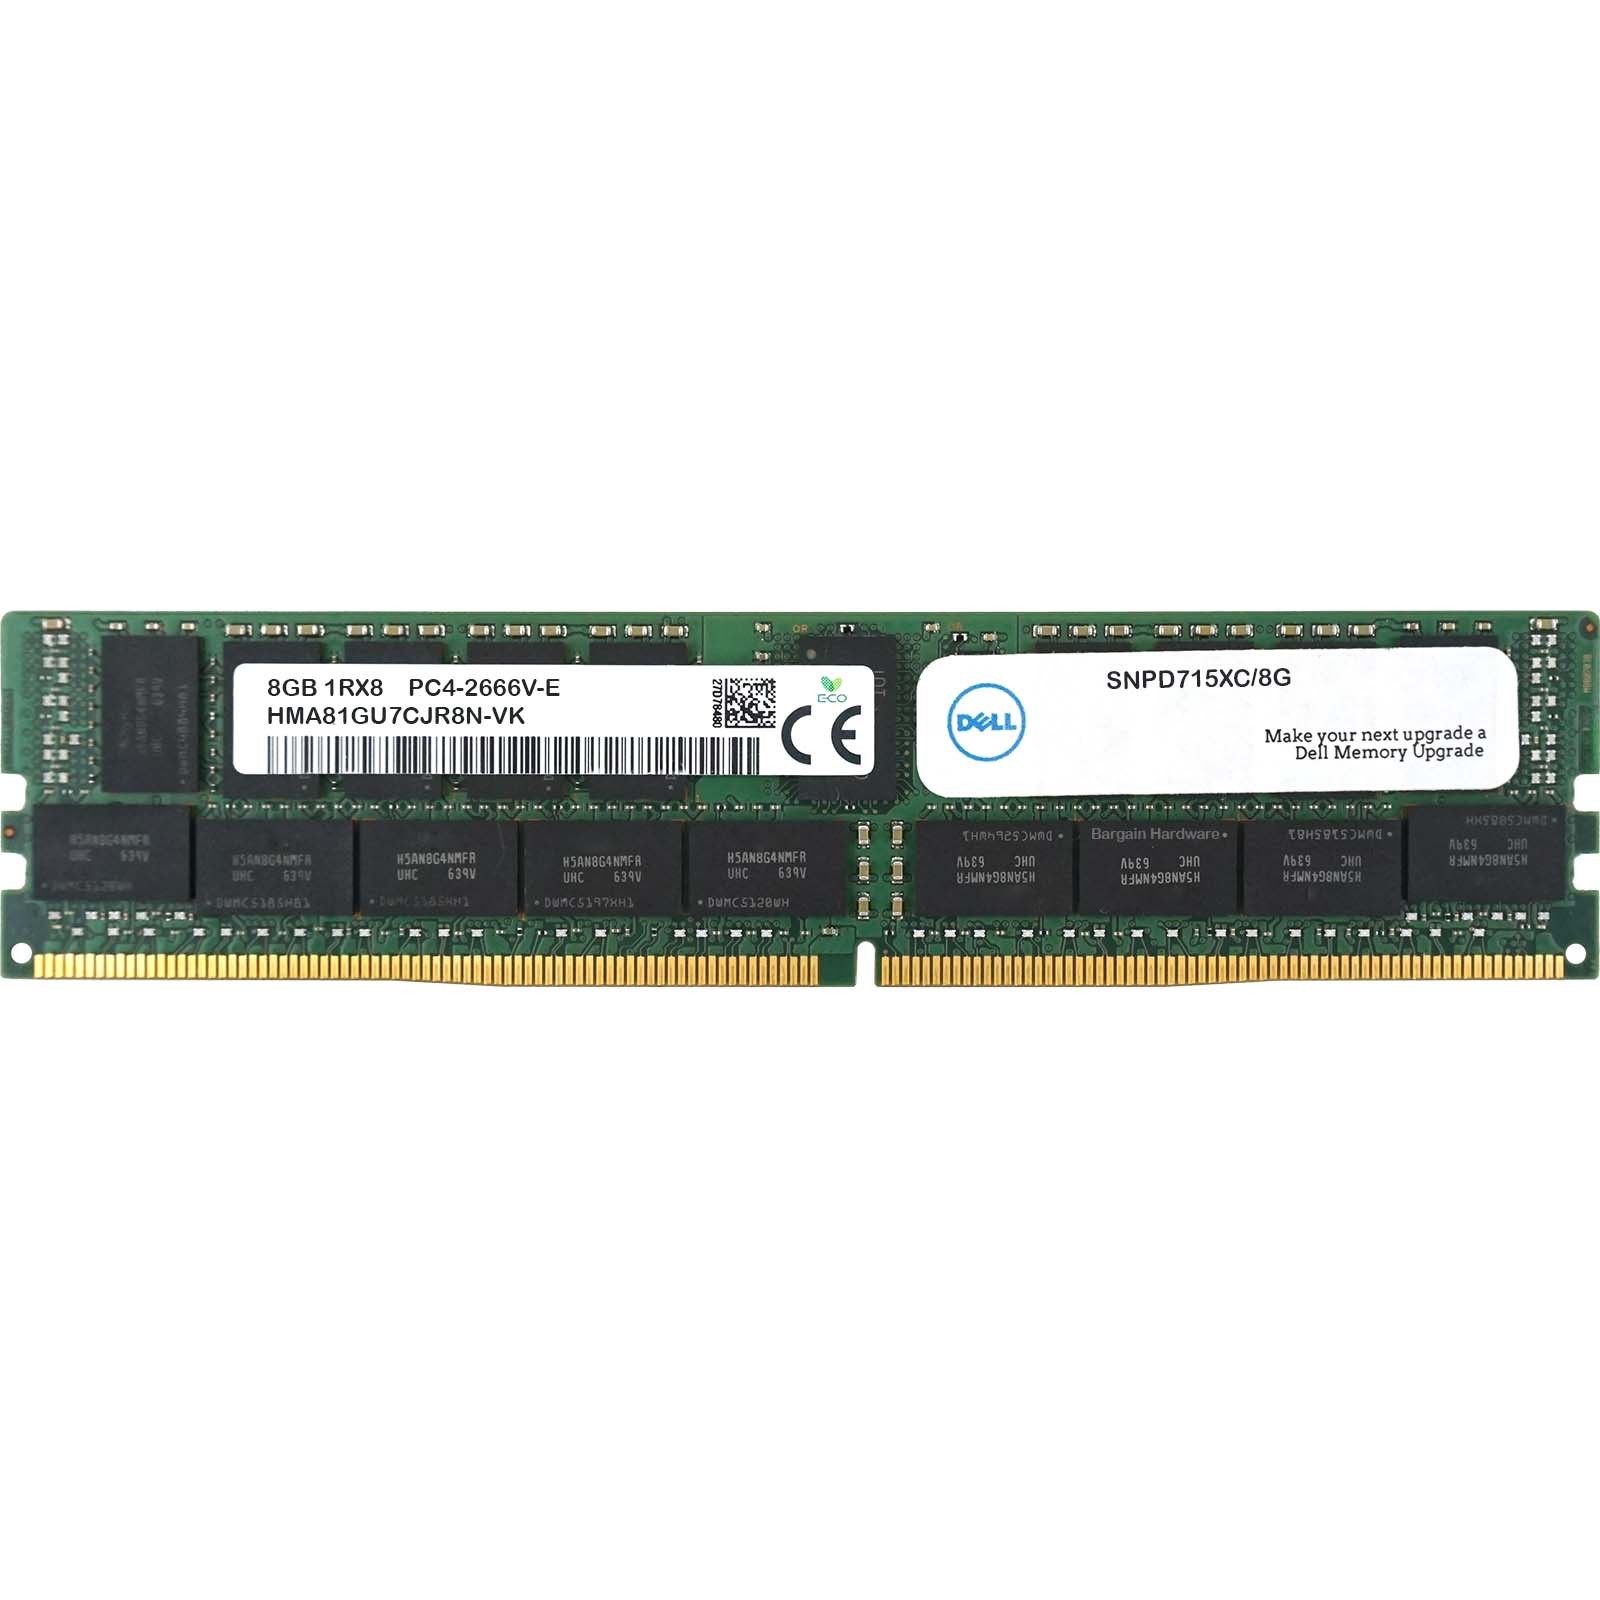 Dell (SNPD715XC/8G) - 8GB PC4-21300V-E (1RX8, DDR4-2666MHz) RAM